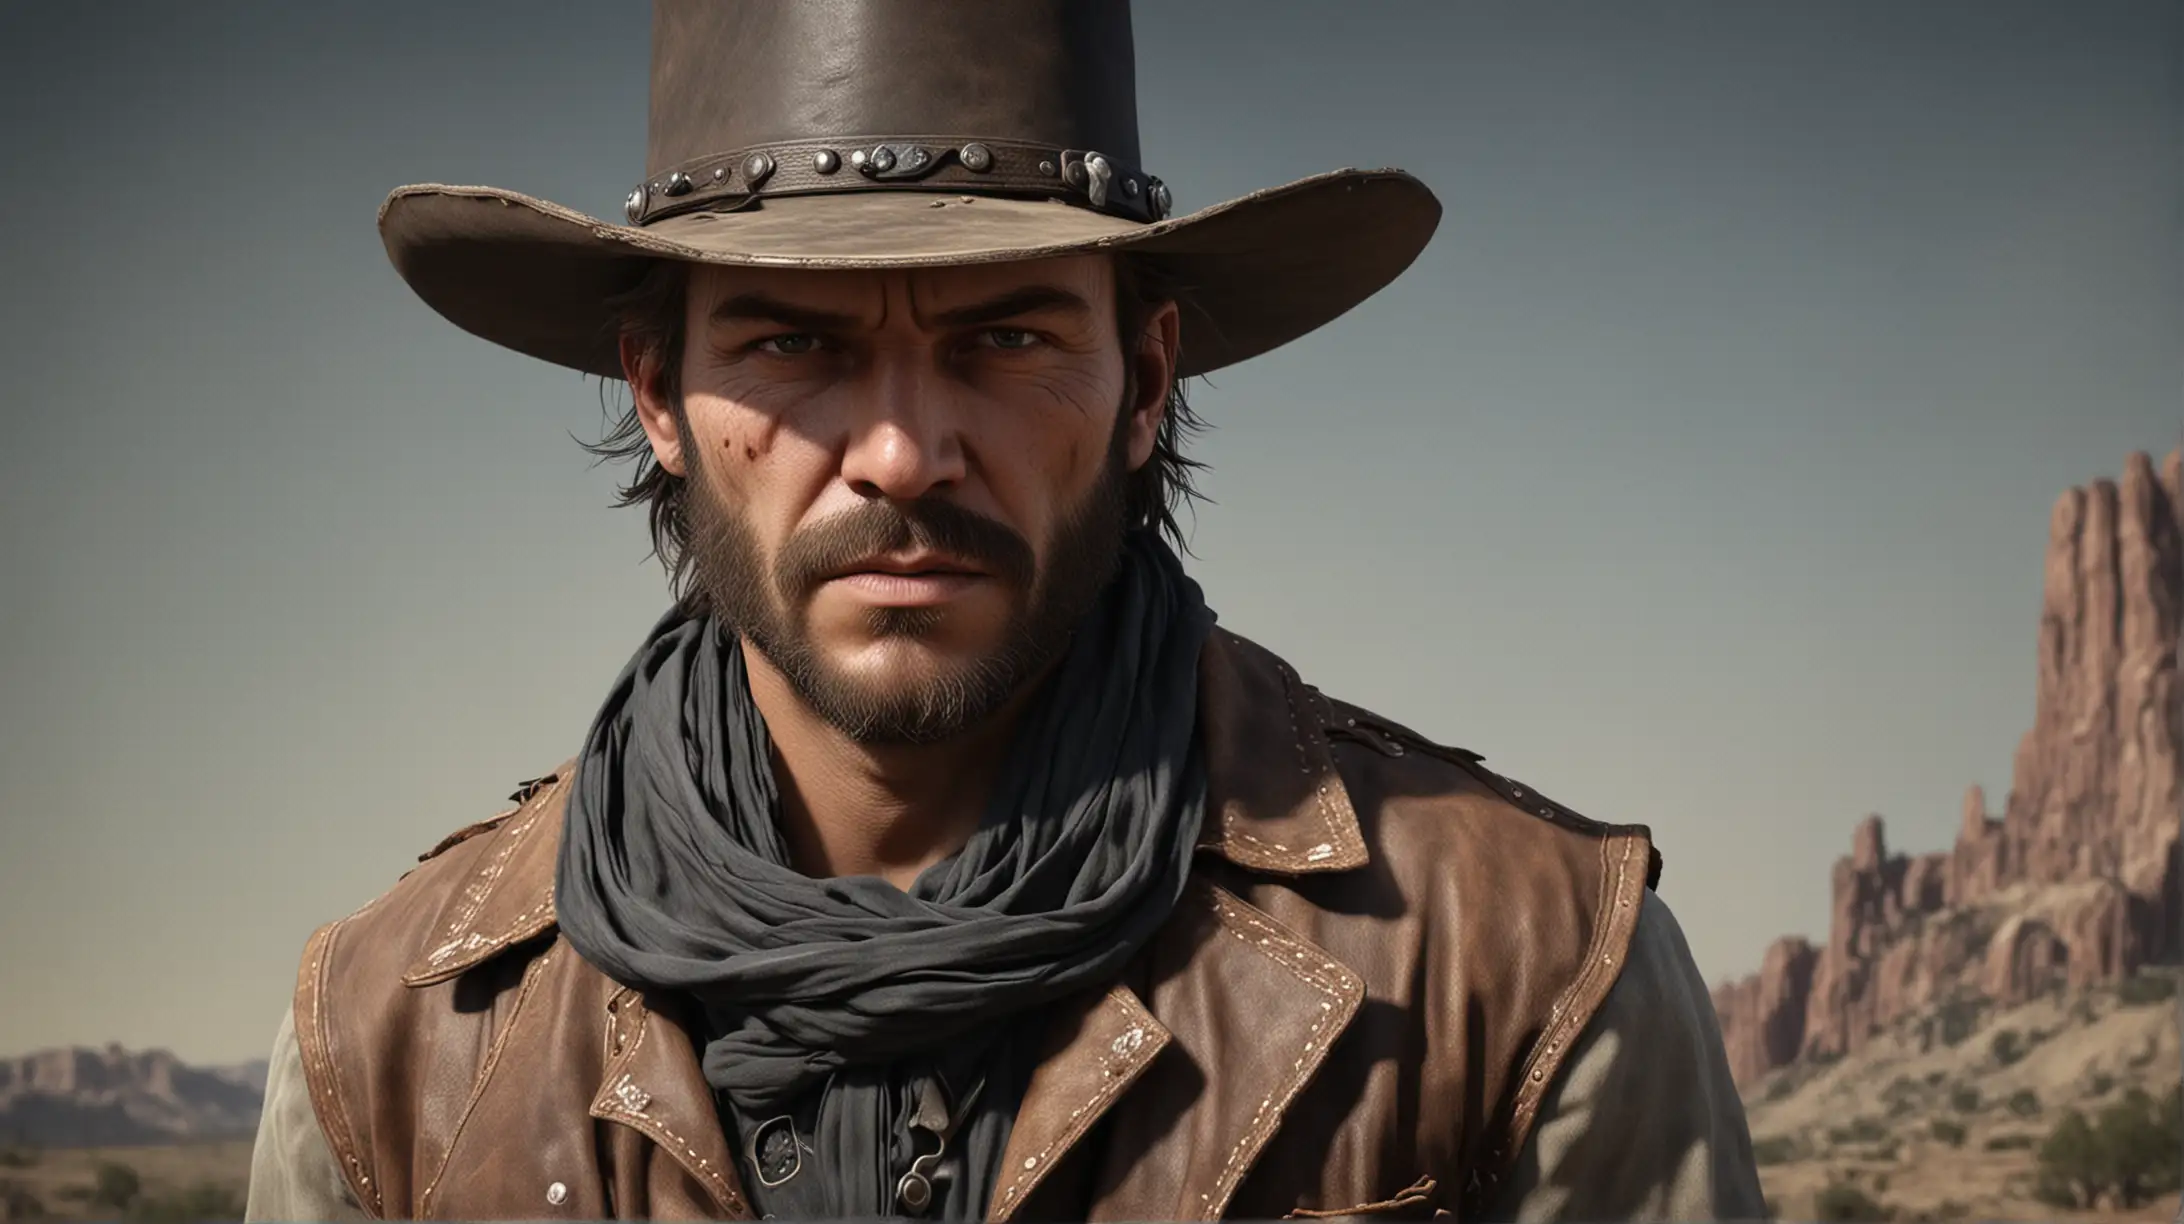 Intense Wild West Outlaw Cowboy Portrait